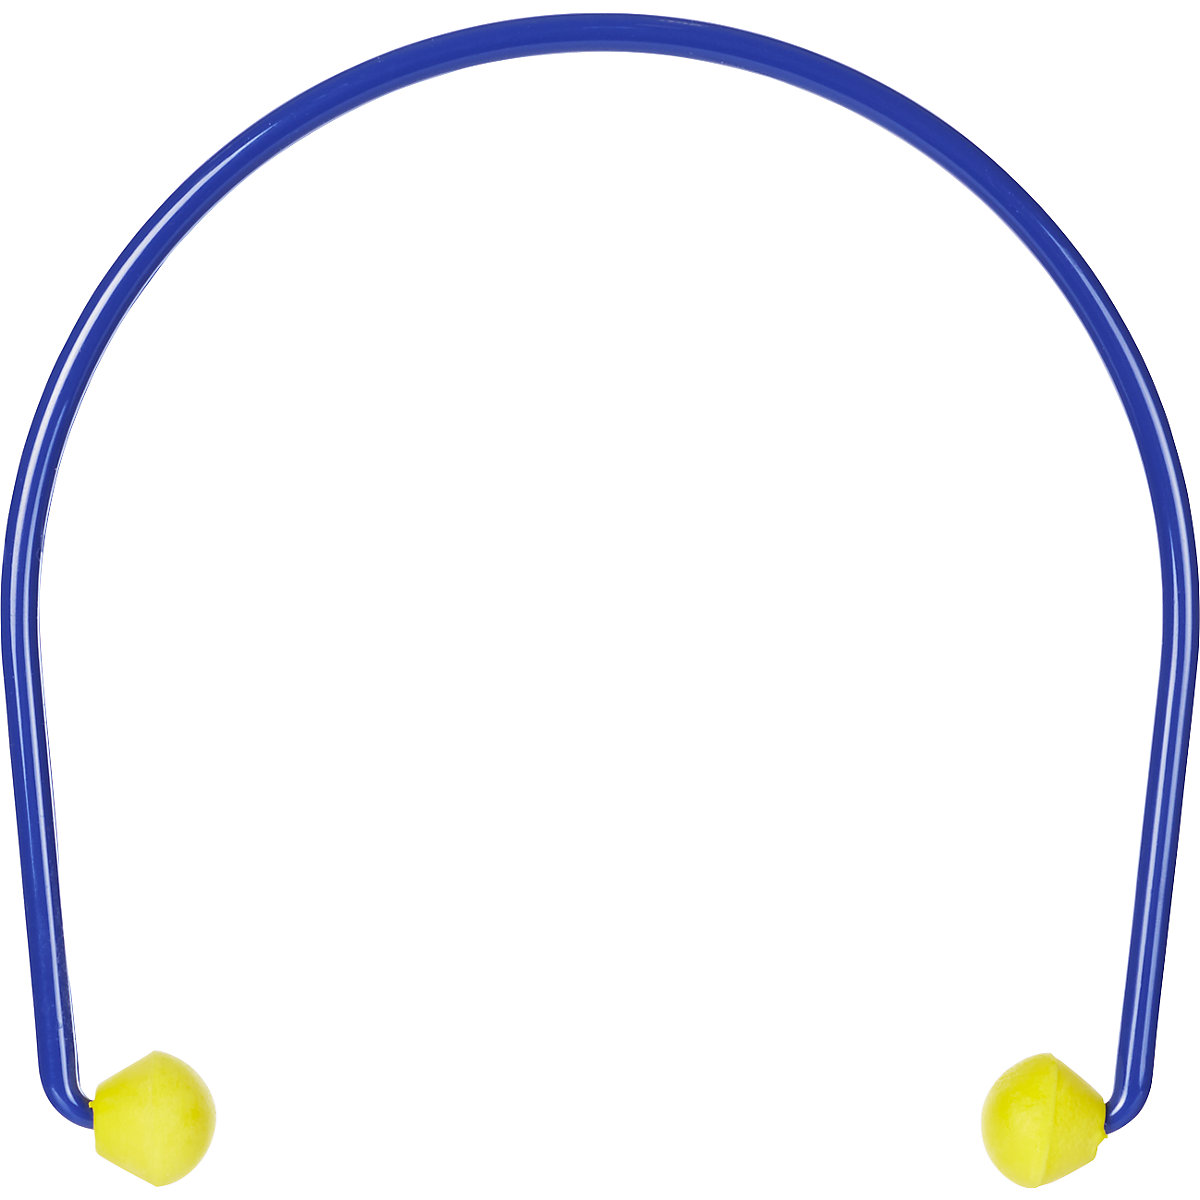 E-A-Rcaps™ banded earplugs - 3M